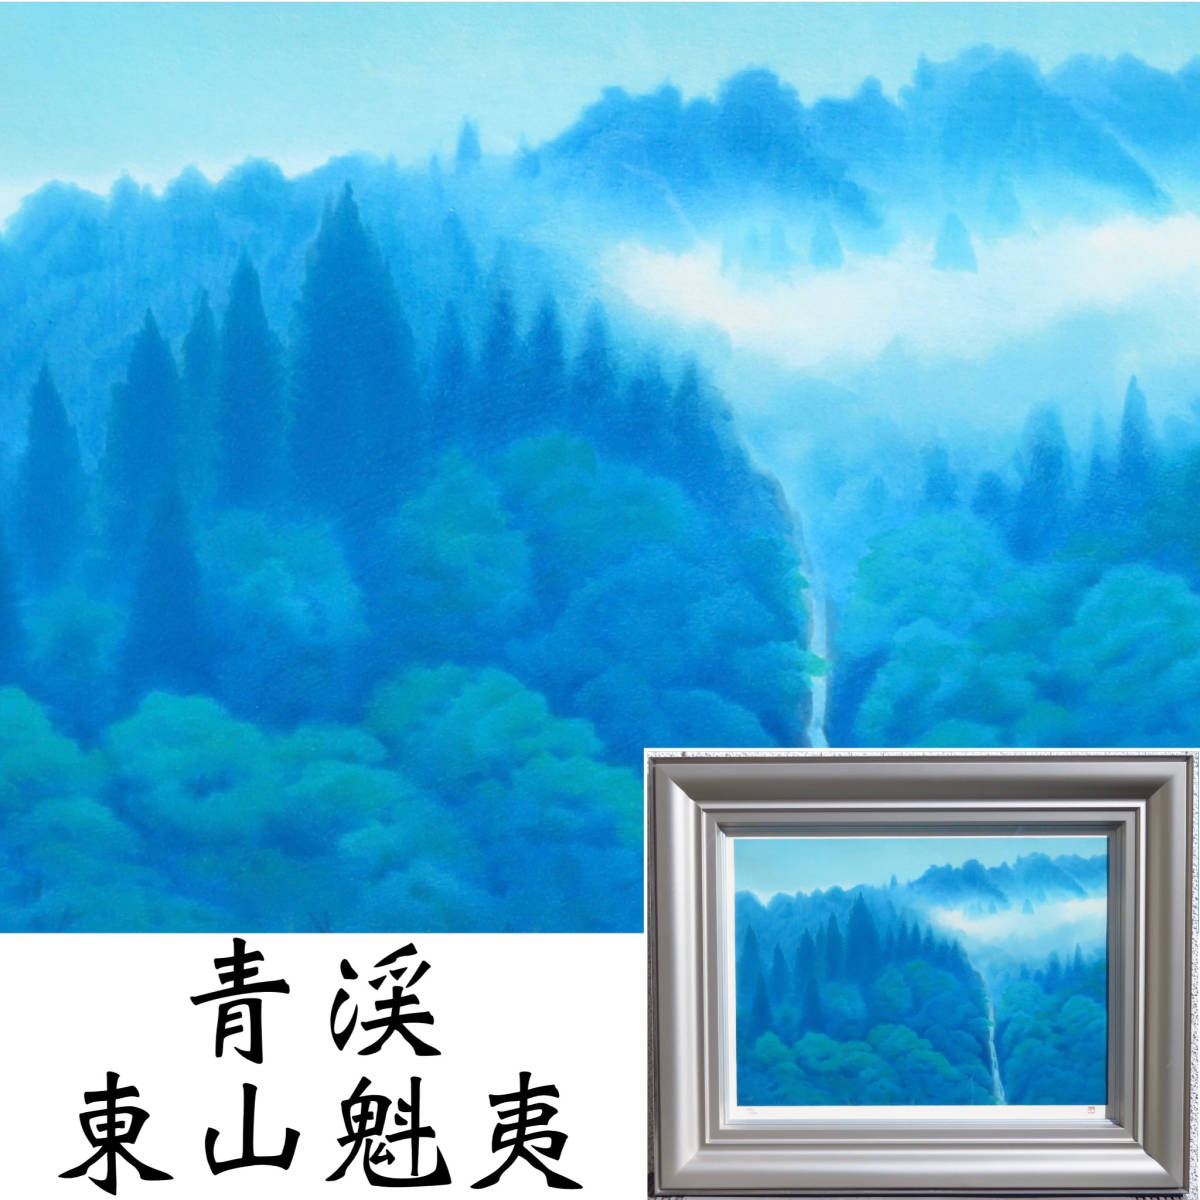 [SAKURAYA] प्रामाणिक कलाकृति की गारंटी [Seikei/ Higashiyama Kaii] लिथोग्राफ, 250 प्रतियों तक सीमित, परिदृश्य चित्रकला, कला, कलाकार, अंकित किया, मुहर, एंटीक, 75.3 x 61.2, कलाकृति, प्रिंटों, लिथोग्राफी, लिथोग्राफ